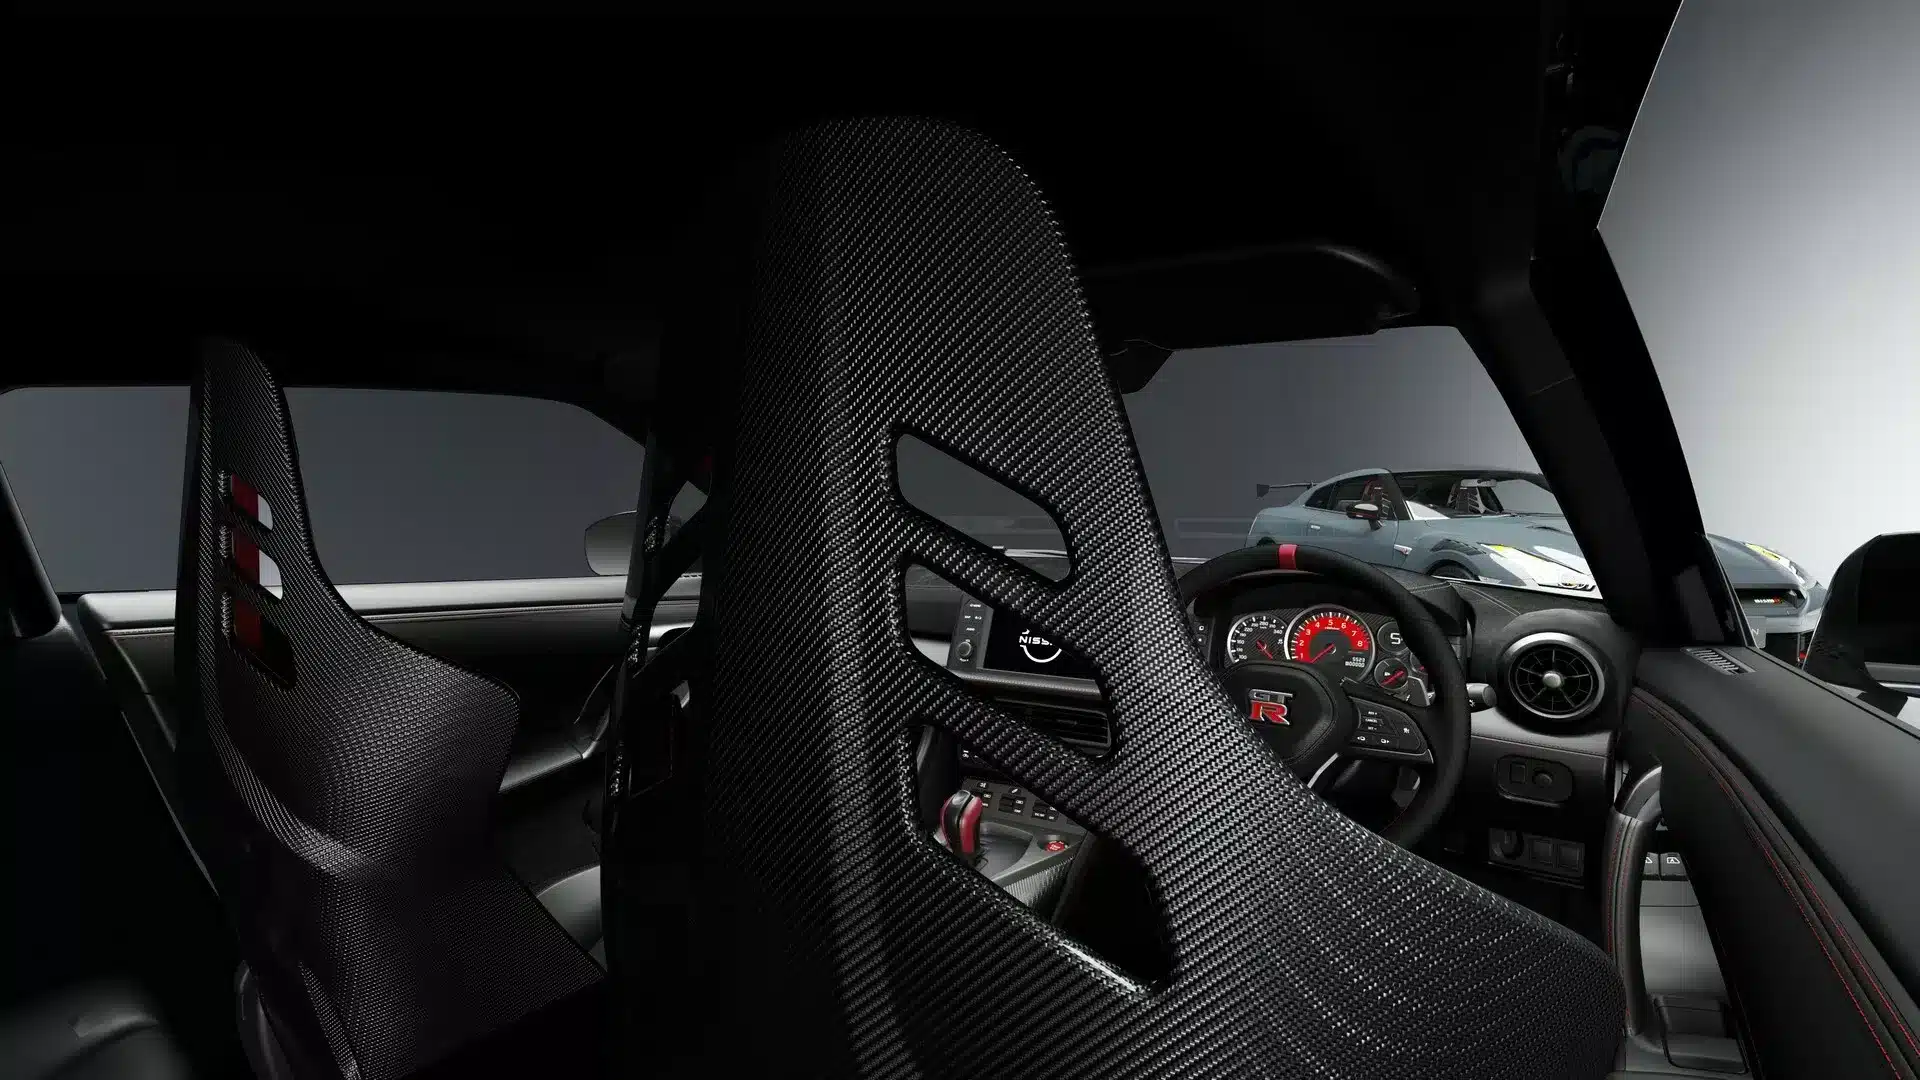 Nissan GT R interior